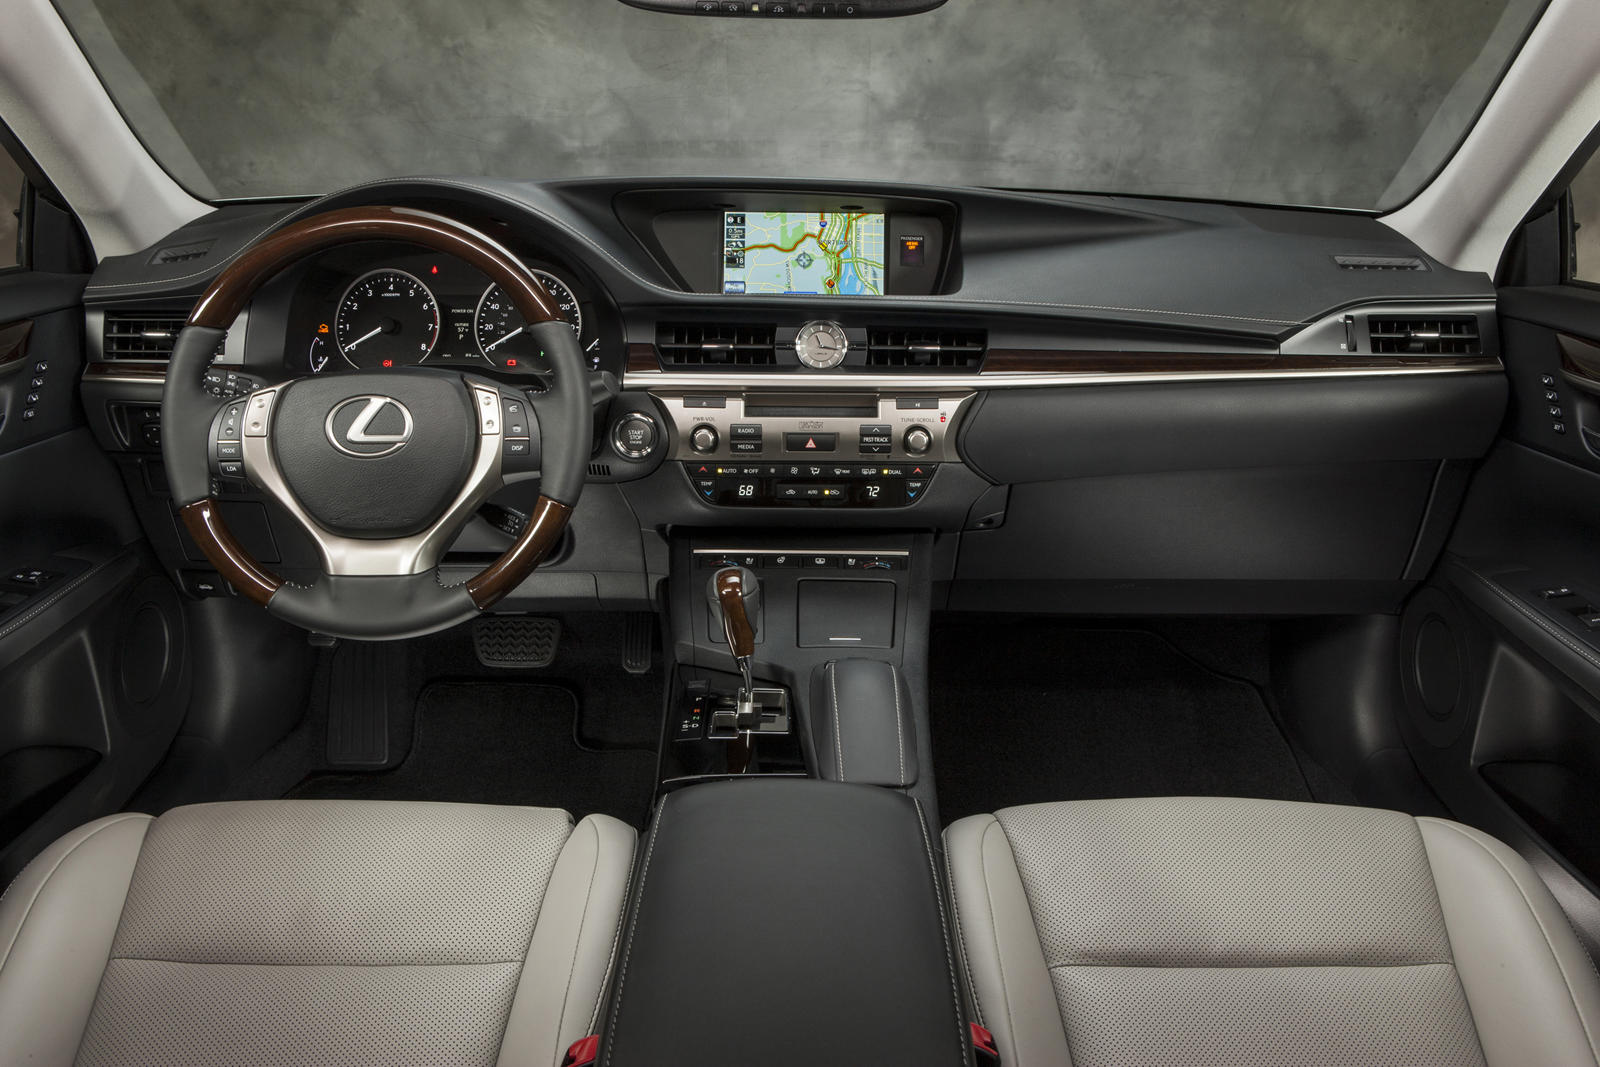 2014 Lexus ES Infotainment System